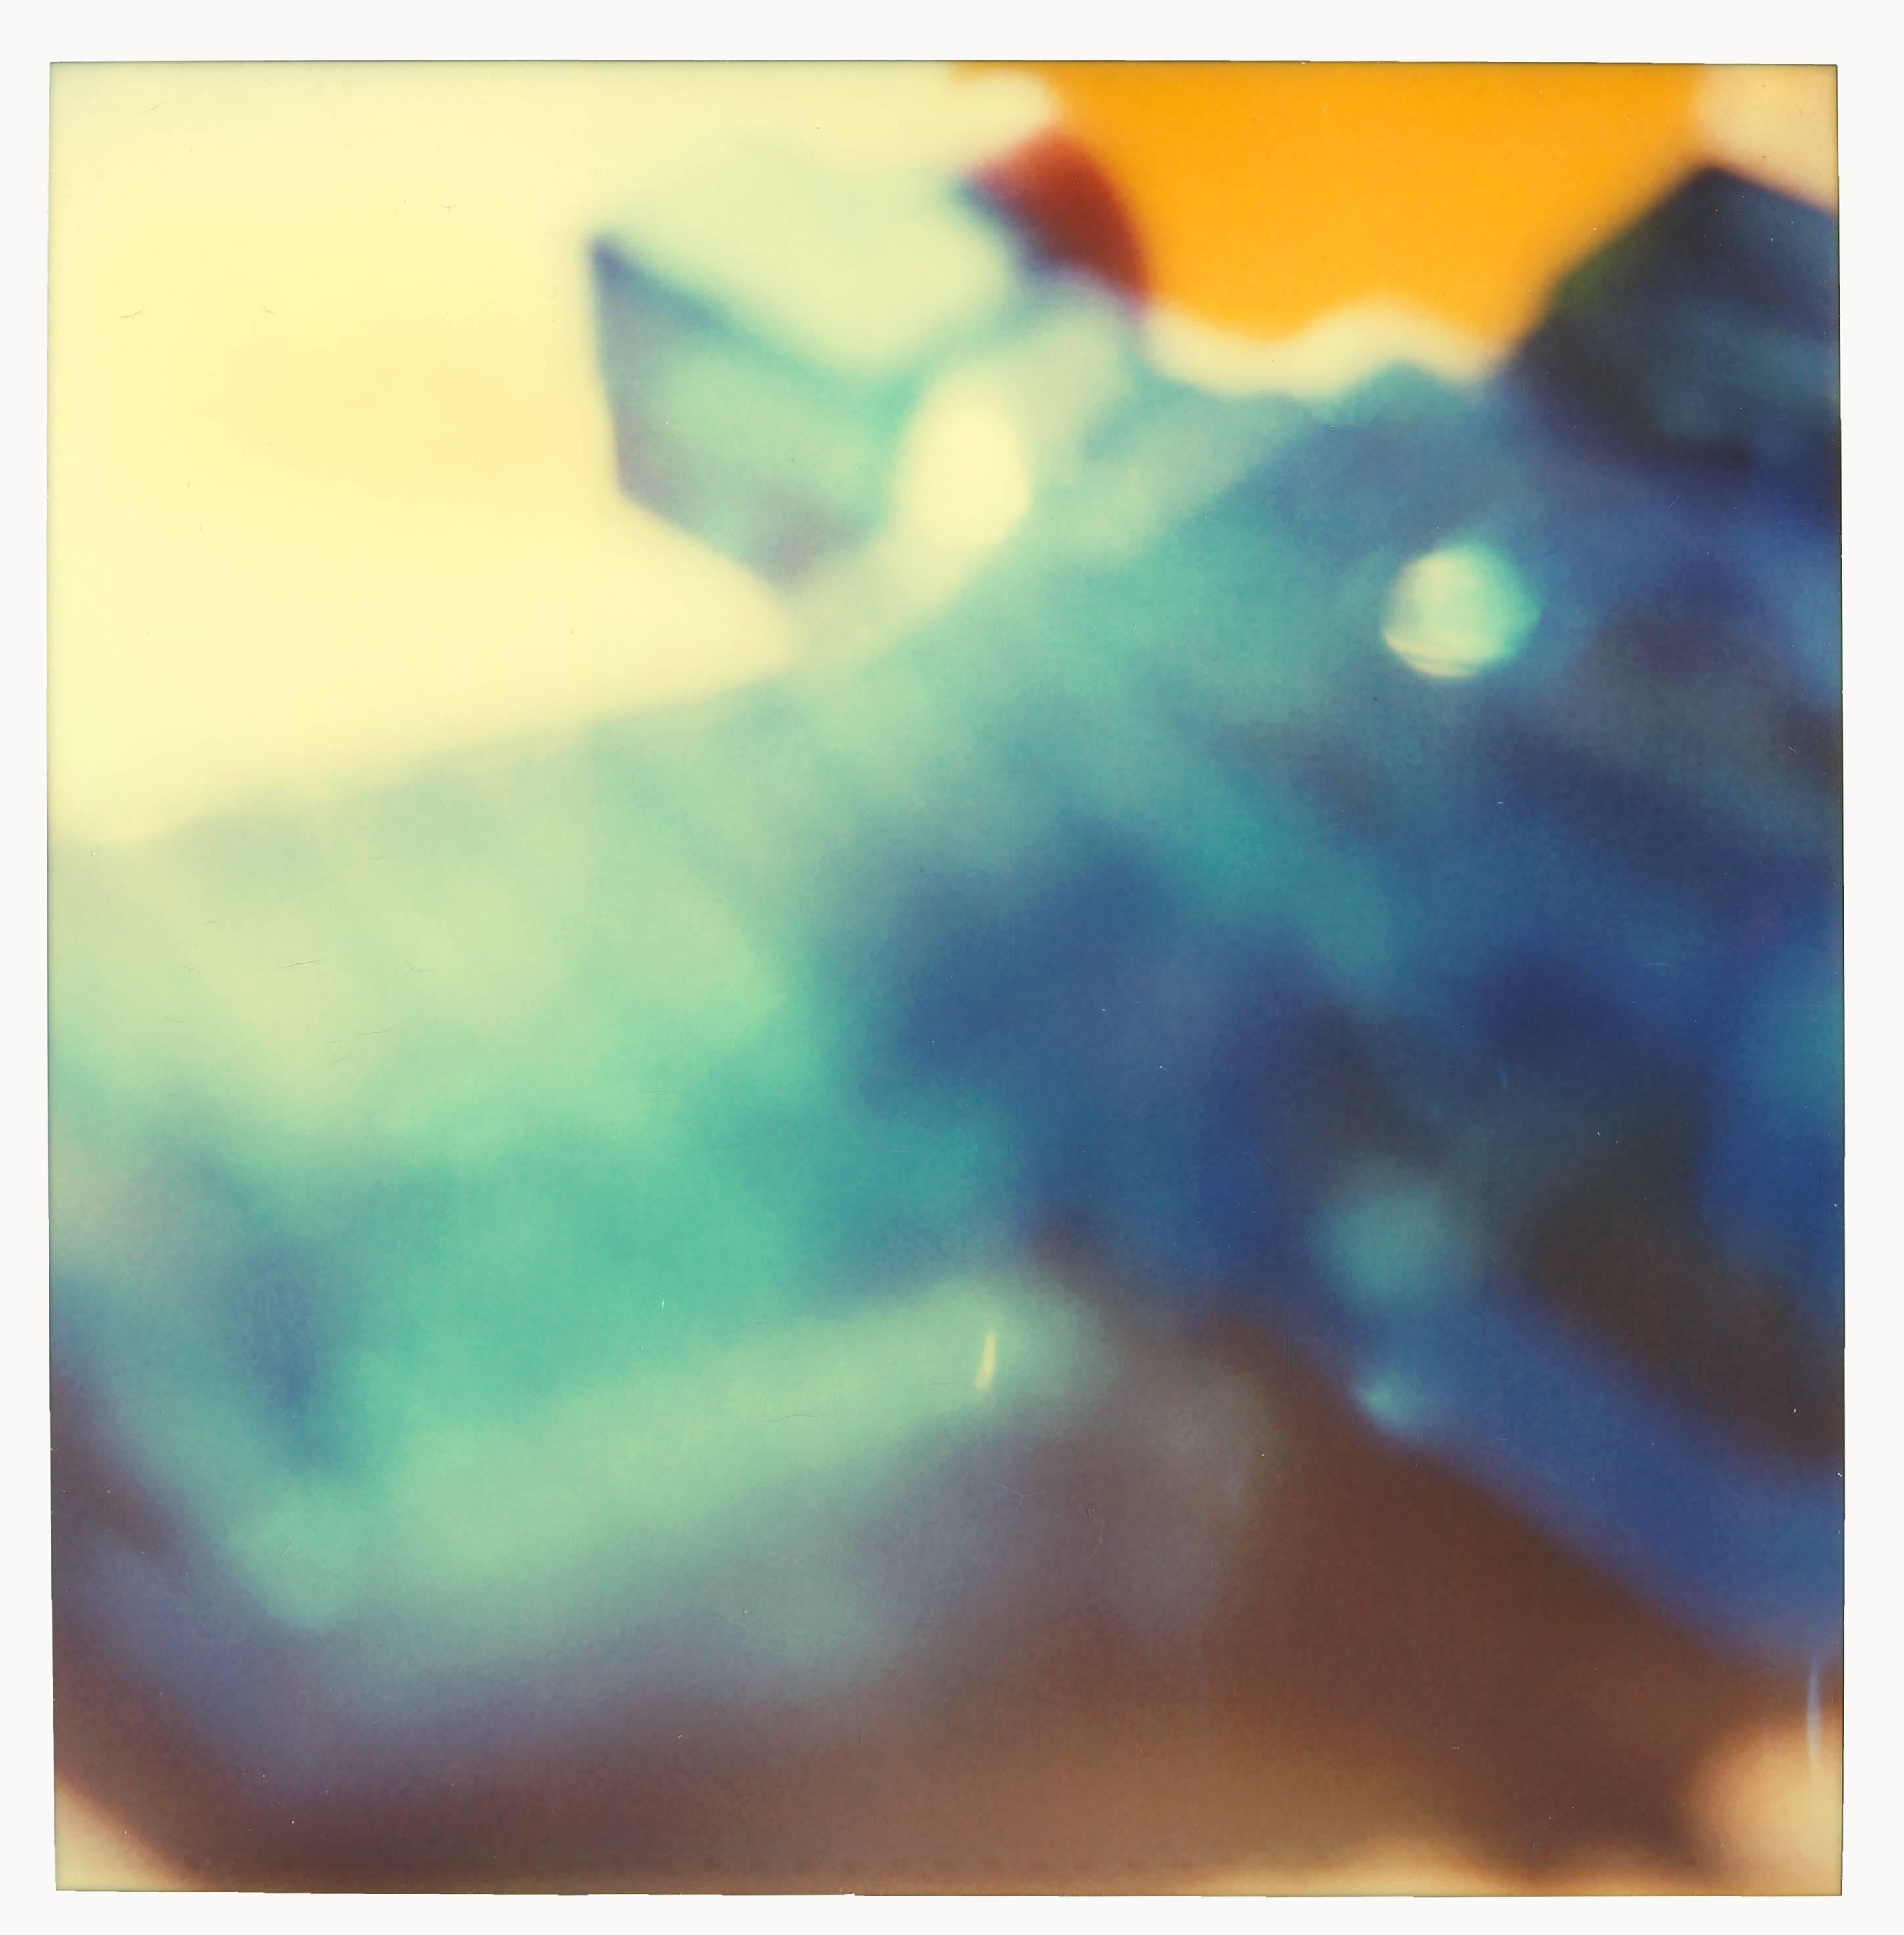 Blue Water Pistol - Contemporary, Nude, Women, Polaroid, 21st Century, Blue - Photograph by Stefanie Schneider